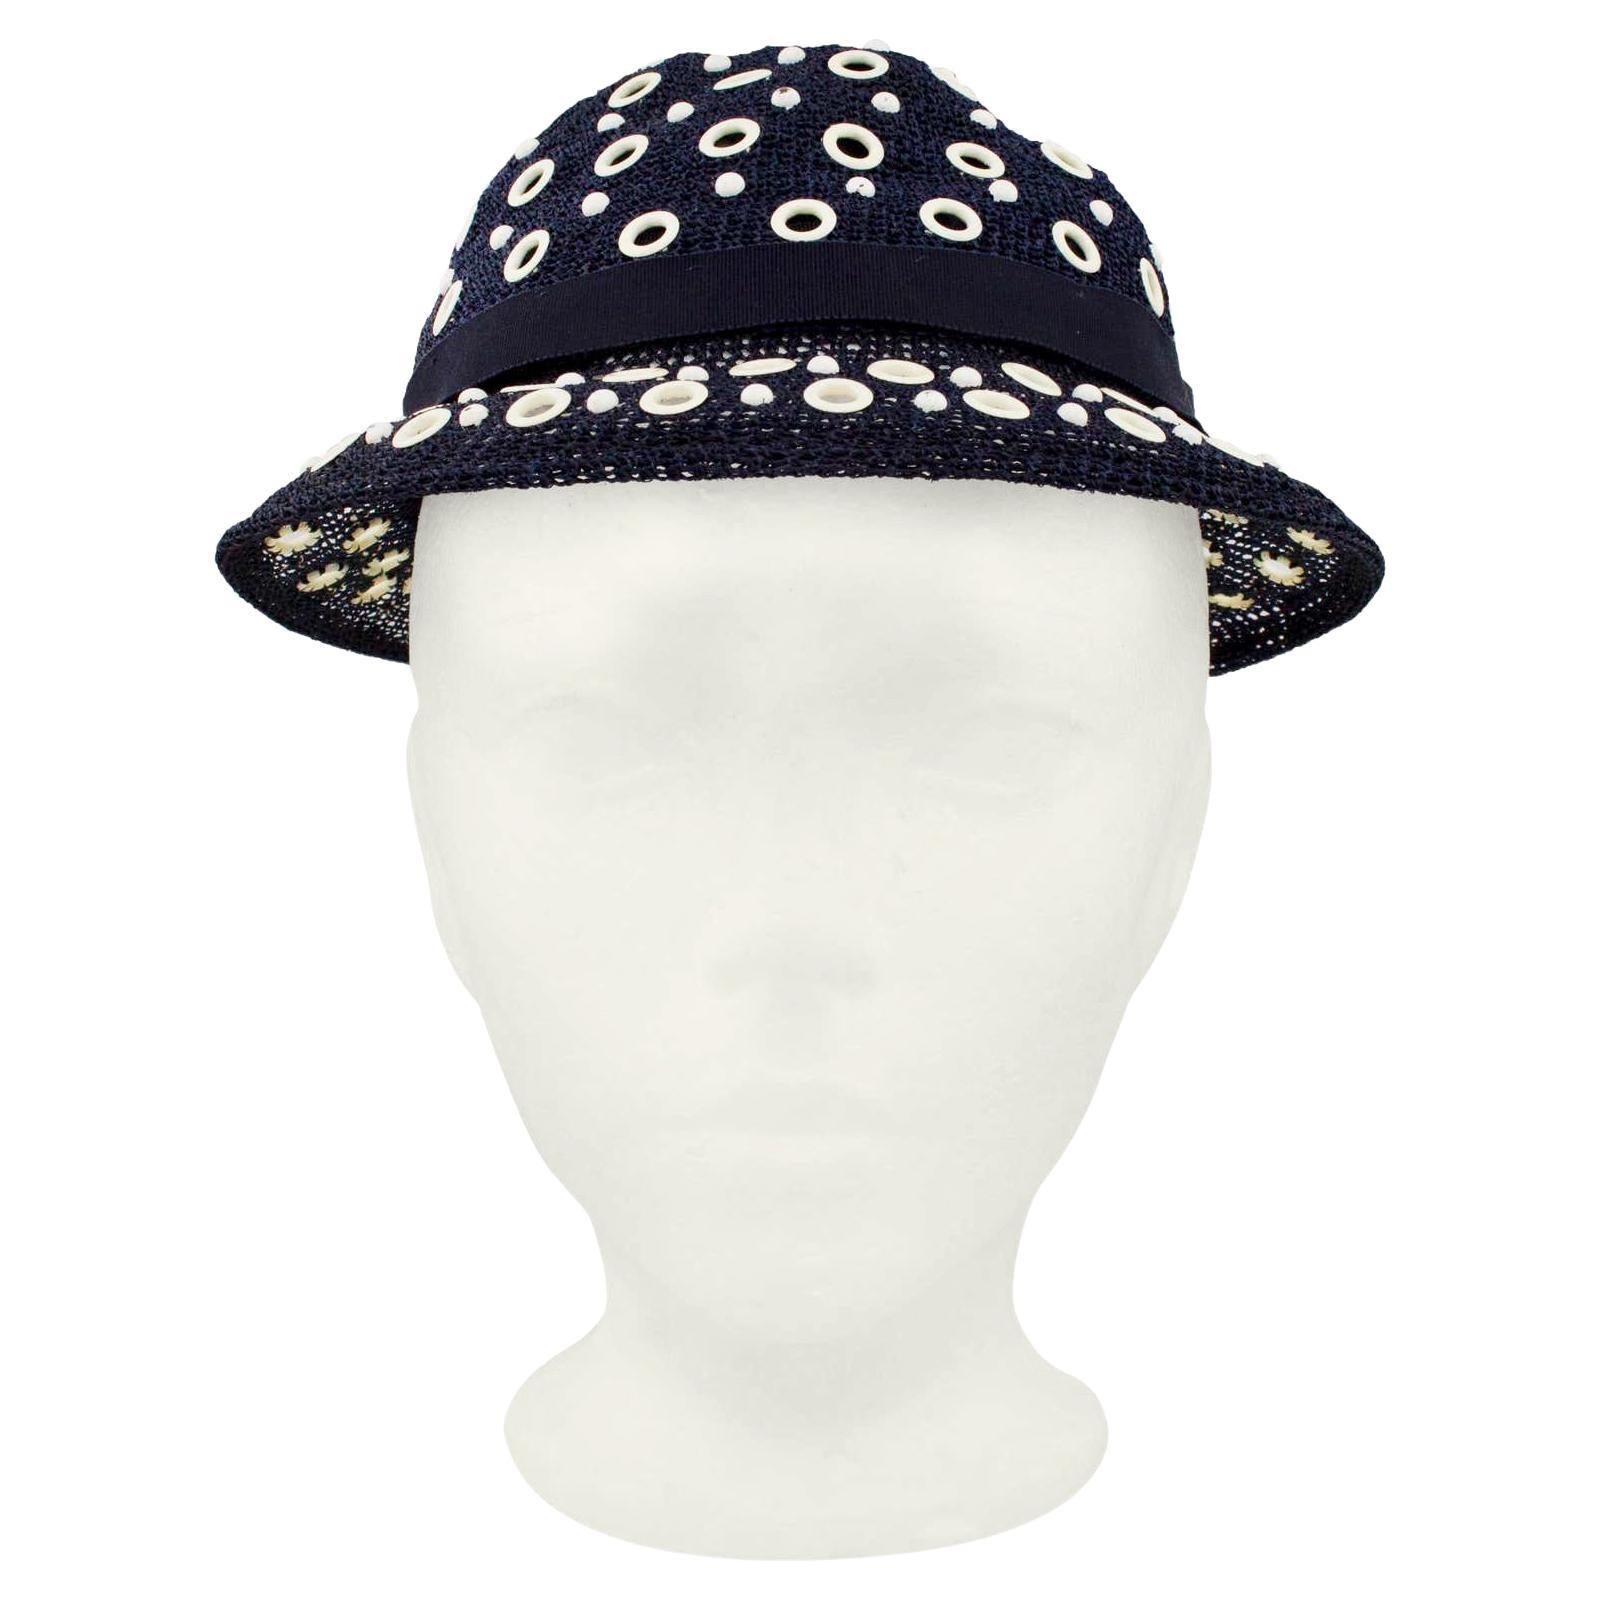 Sehr charmanter Bowler-Hut im Stil der 1950er Jahre vom kanadischen Luxus-Einzelhändler Holt Renfrew. Marineblaues Mesh mit kontrastierenden, weißen Ösen überall. Mit einem marineblauen Grosgrain-Band mit Schleife in der hinteren Mitte. Der Hut ist